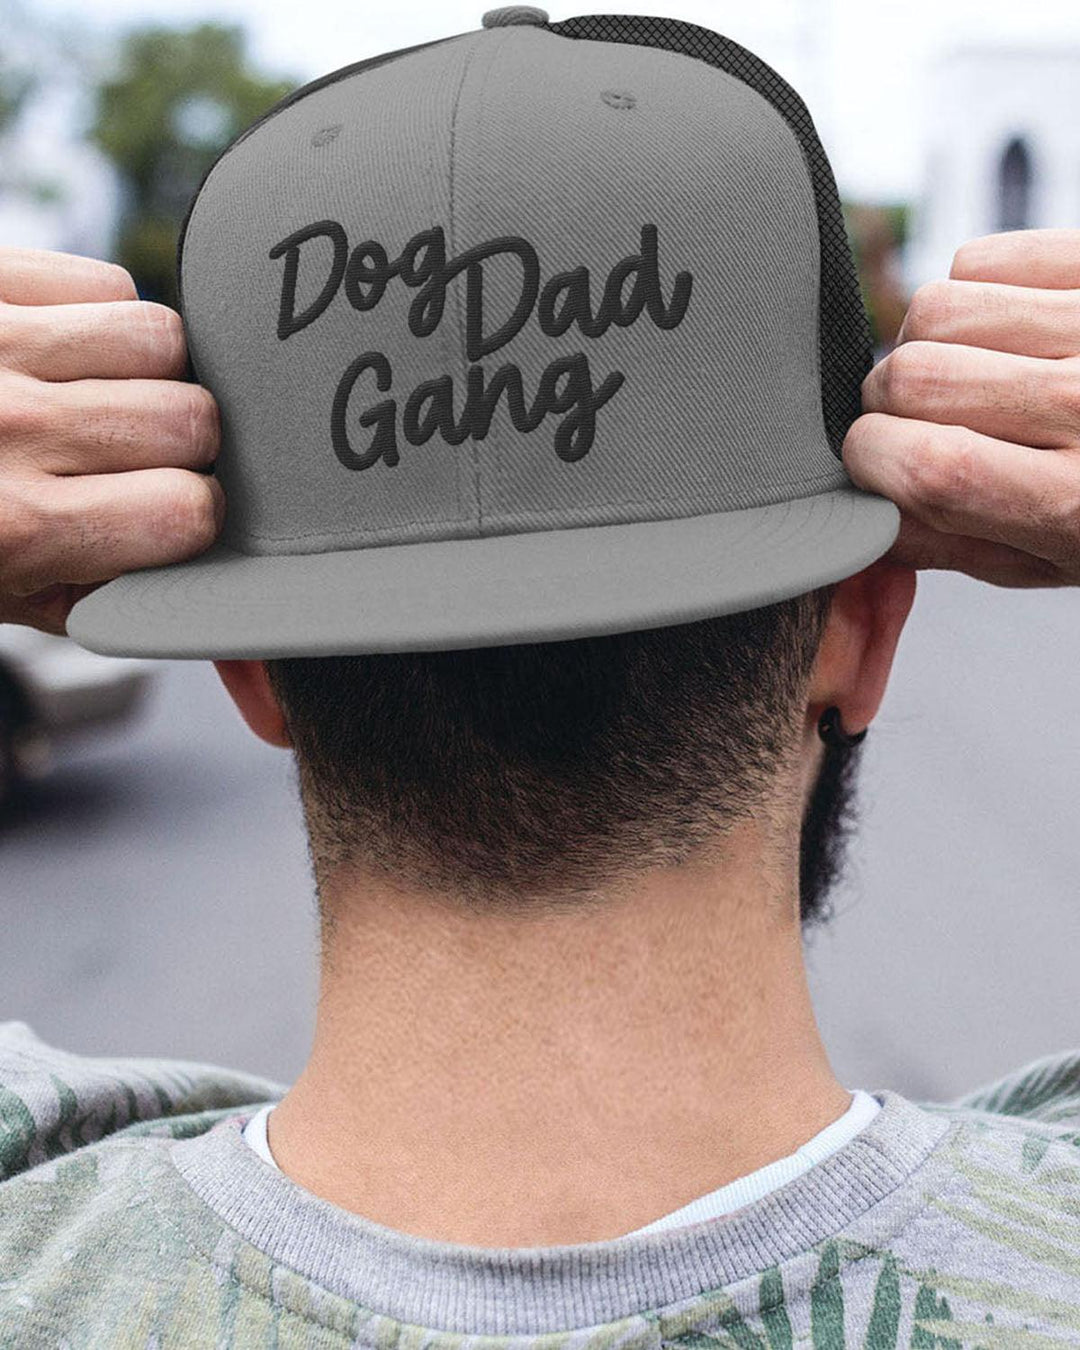 Dog Dad Gang Hat - Pawz